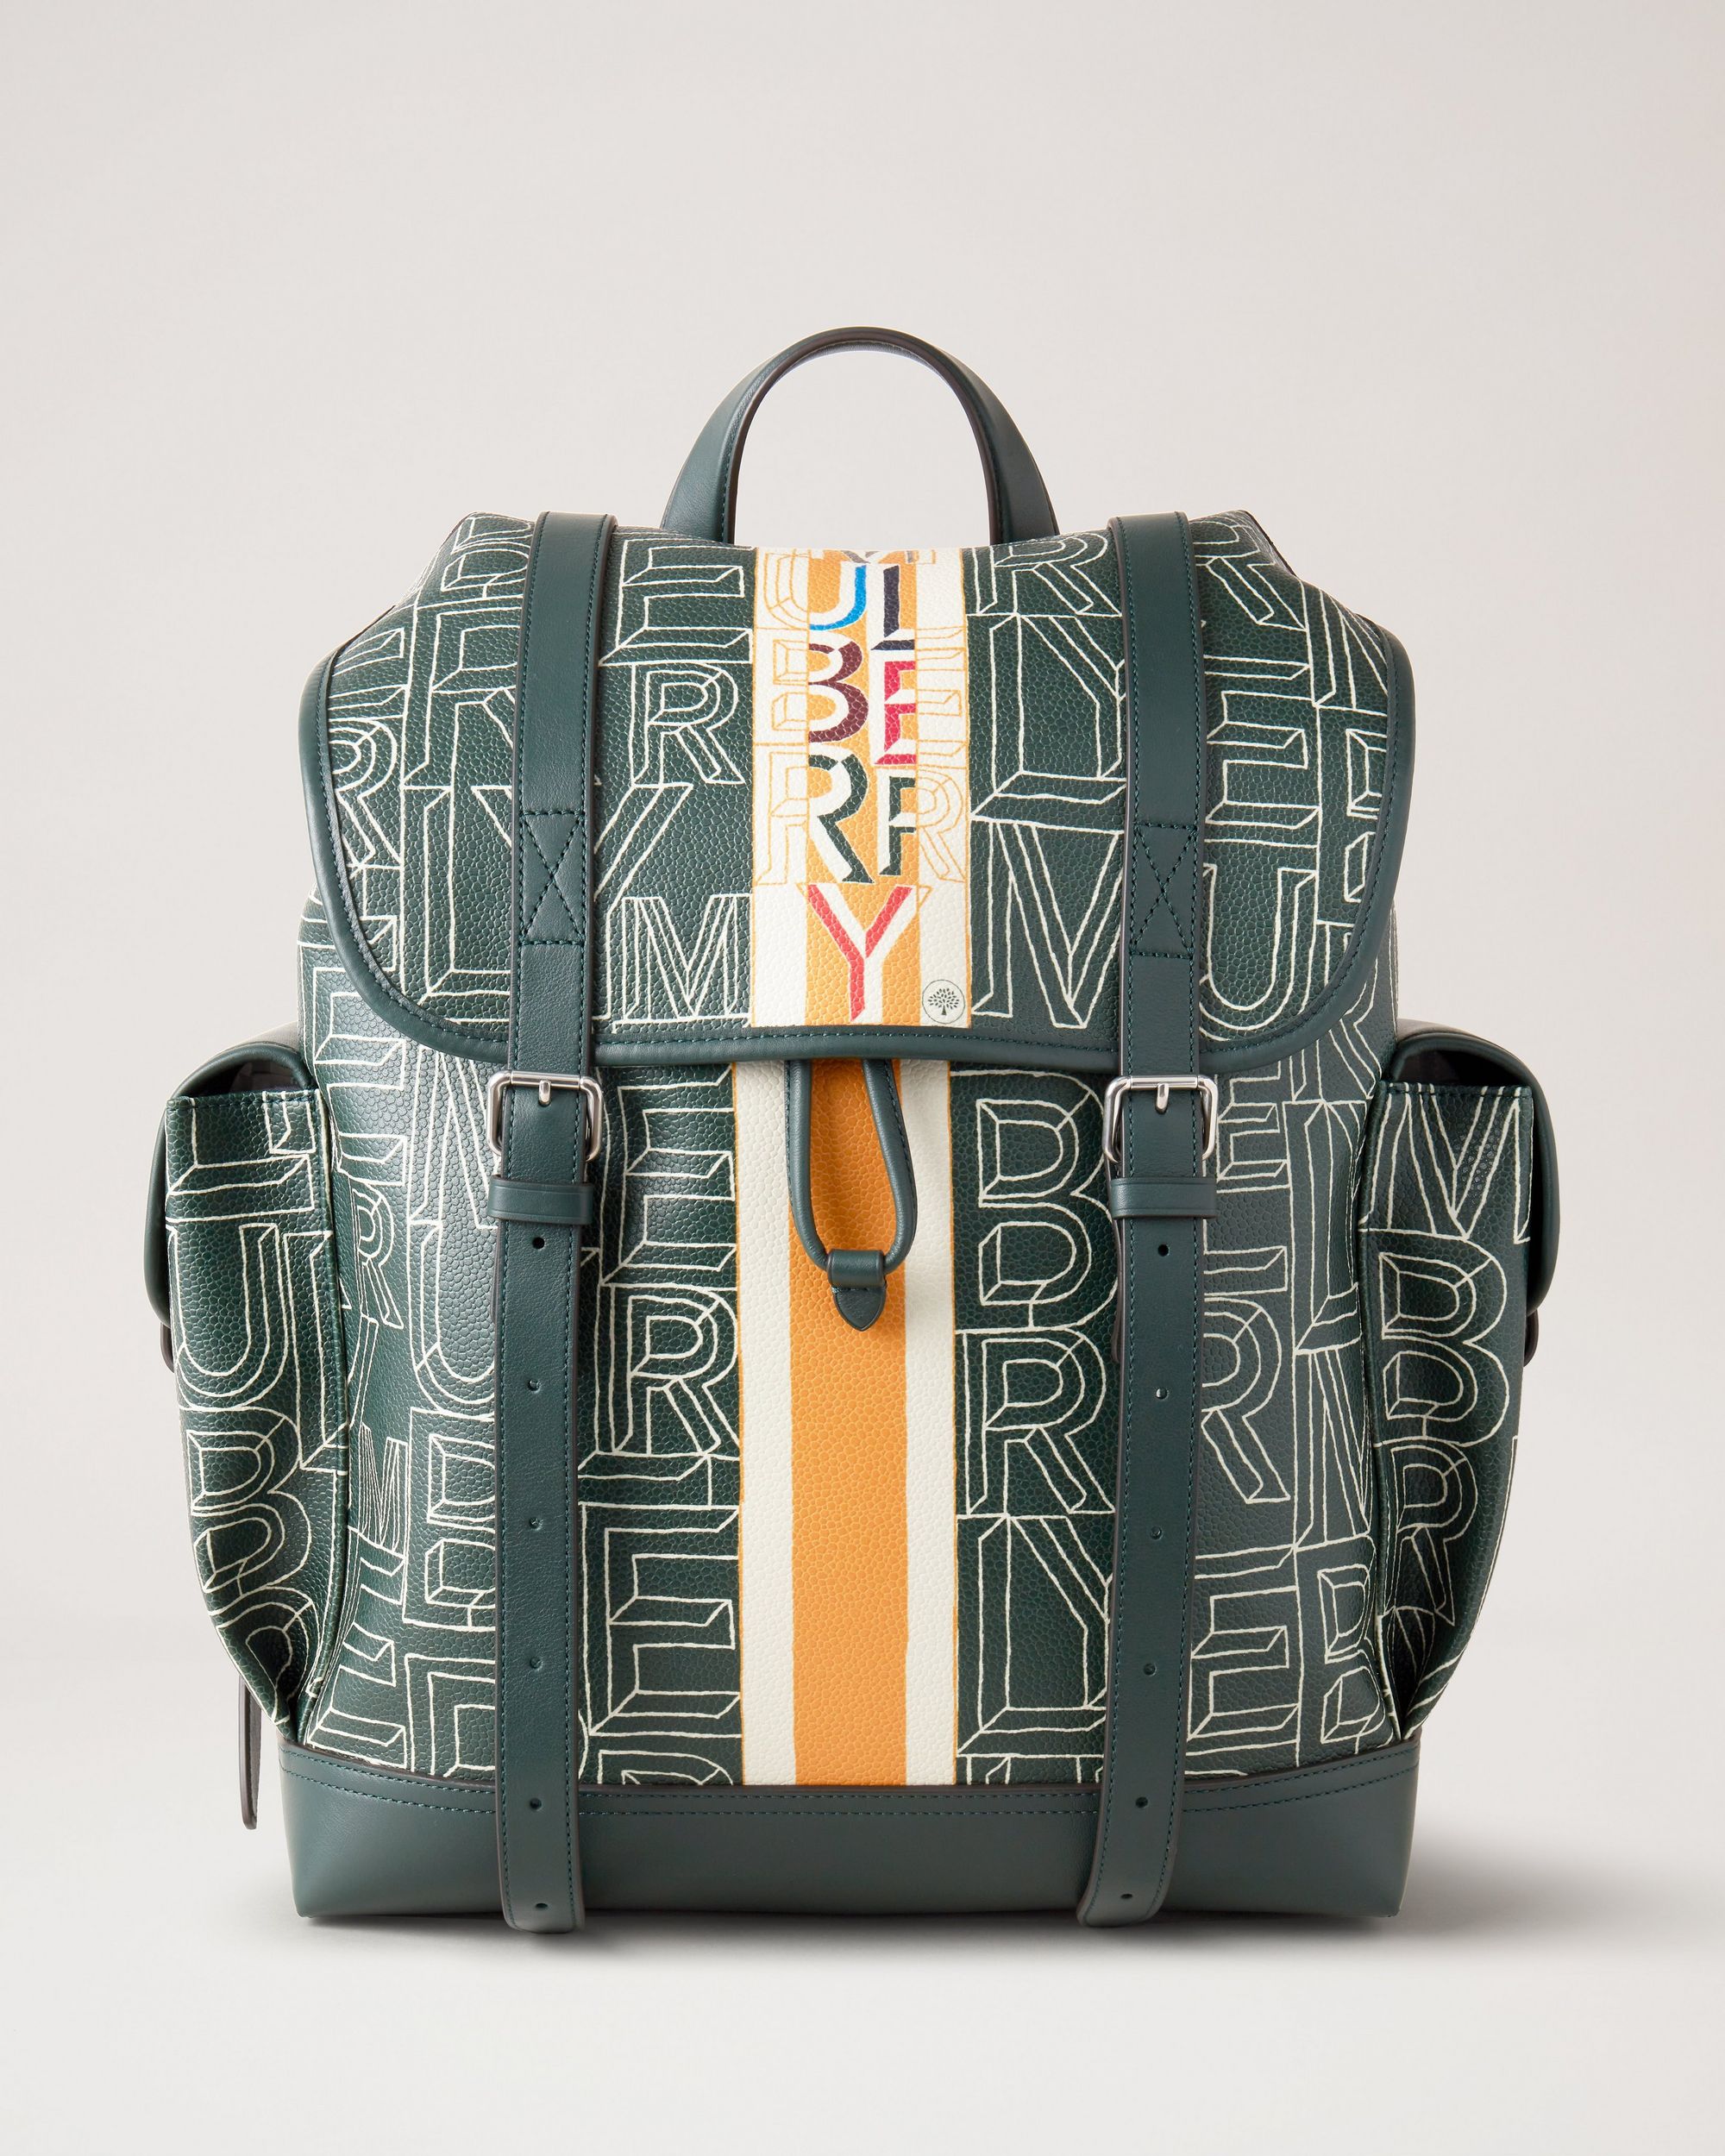 Green patterned designer backpack